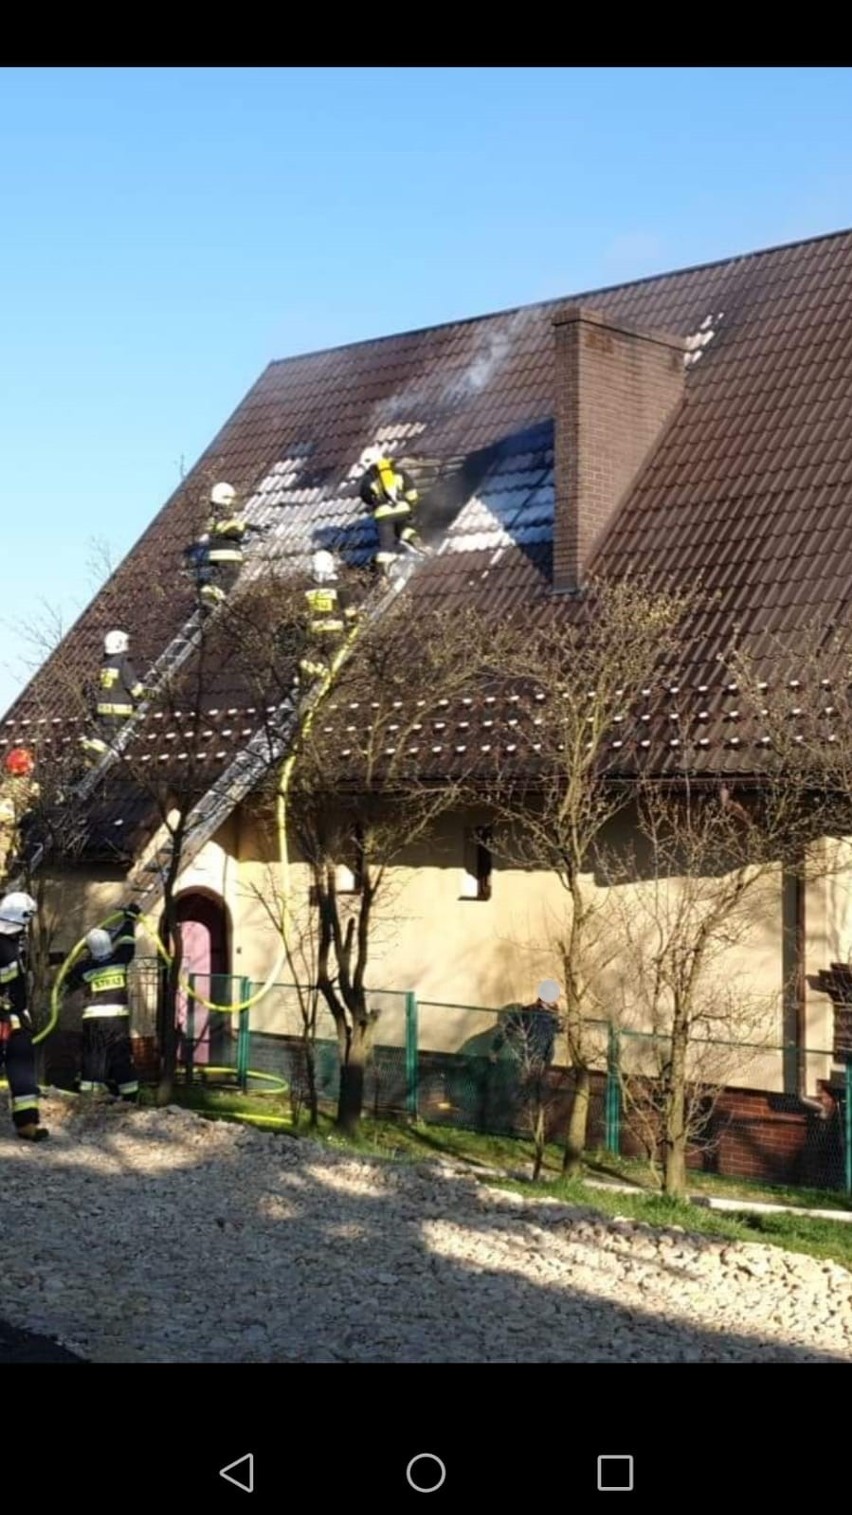 Tokarnia. Palił się dom. Strażacy gasili ogień i udzielili pomocy osobie, która zasłabła [ZDJĘCIA]